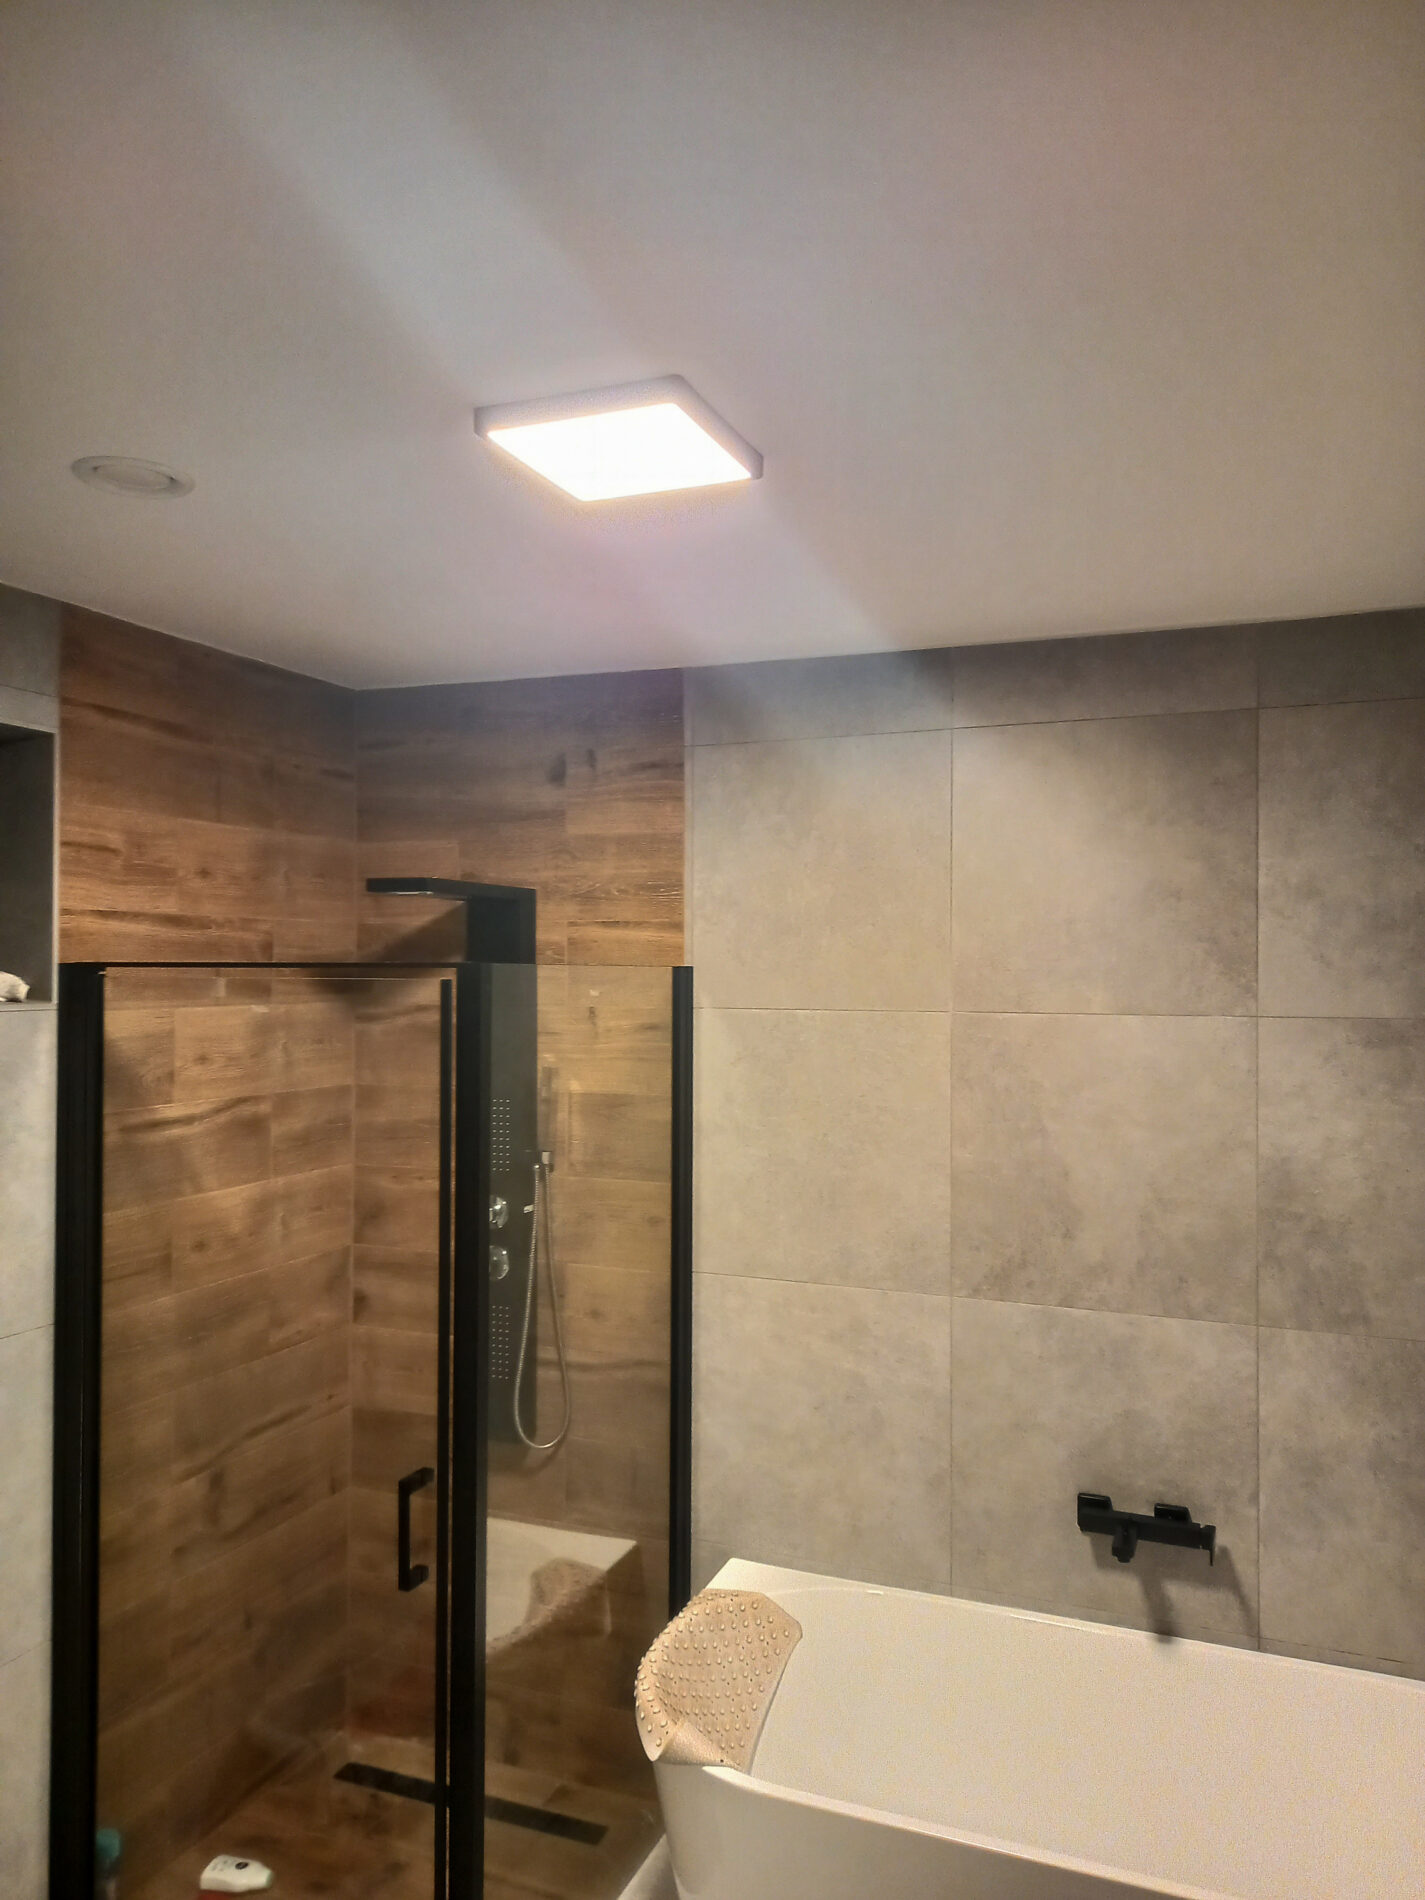 Fürdőszobai LED világítás Eglo Fueva panelekkel.